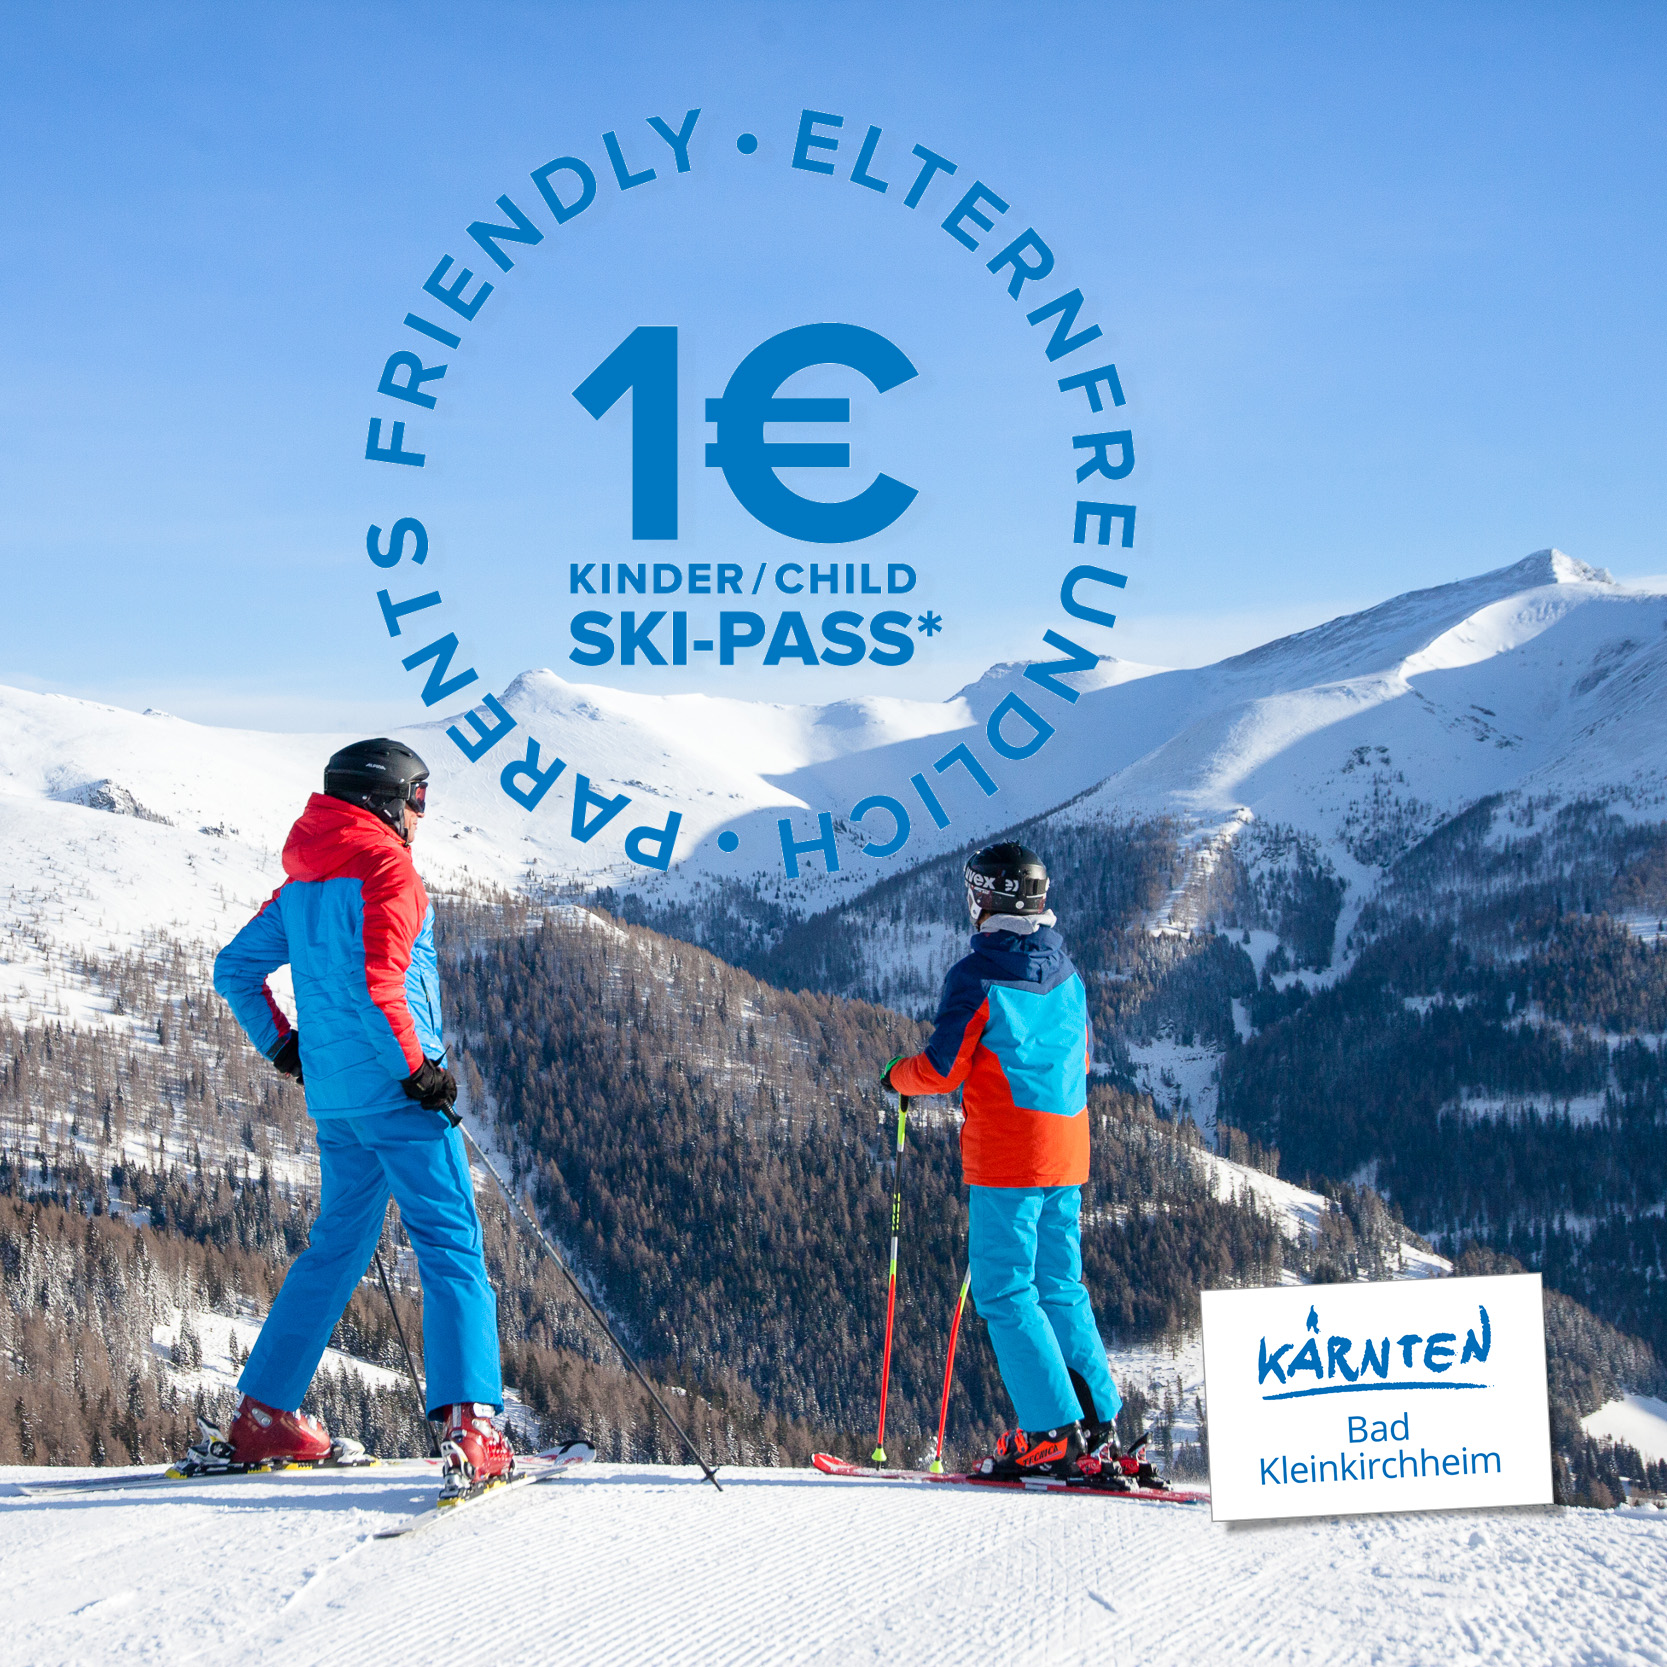 Elternfreundlich sparen: 1€ Skipass für Kinder im Skigebiet Bad Kleinkirchheim. Winterurlaub auf der Sonnenseite der Alpen